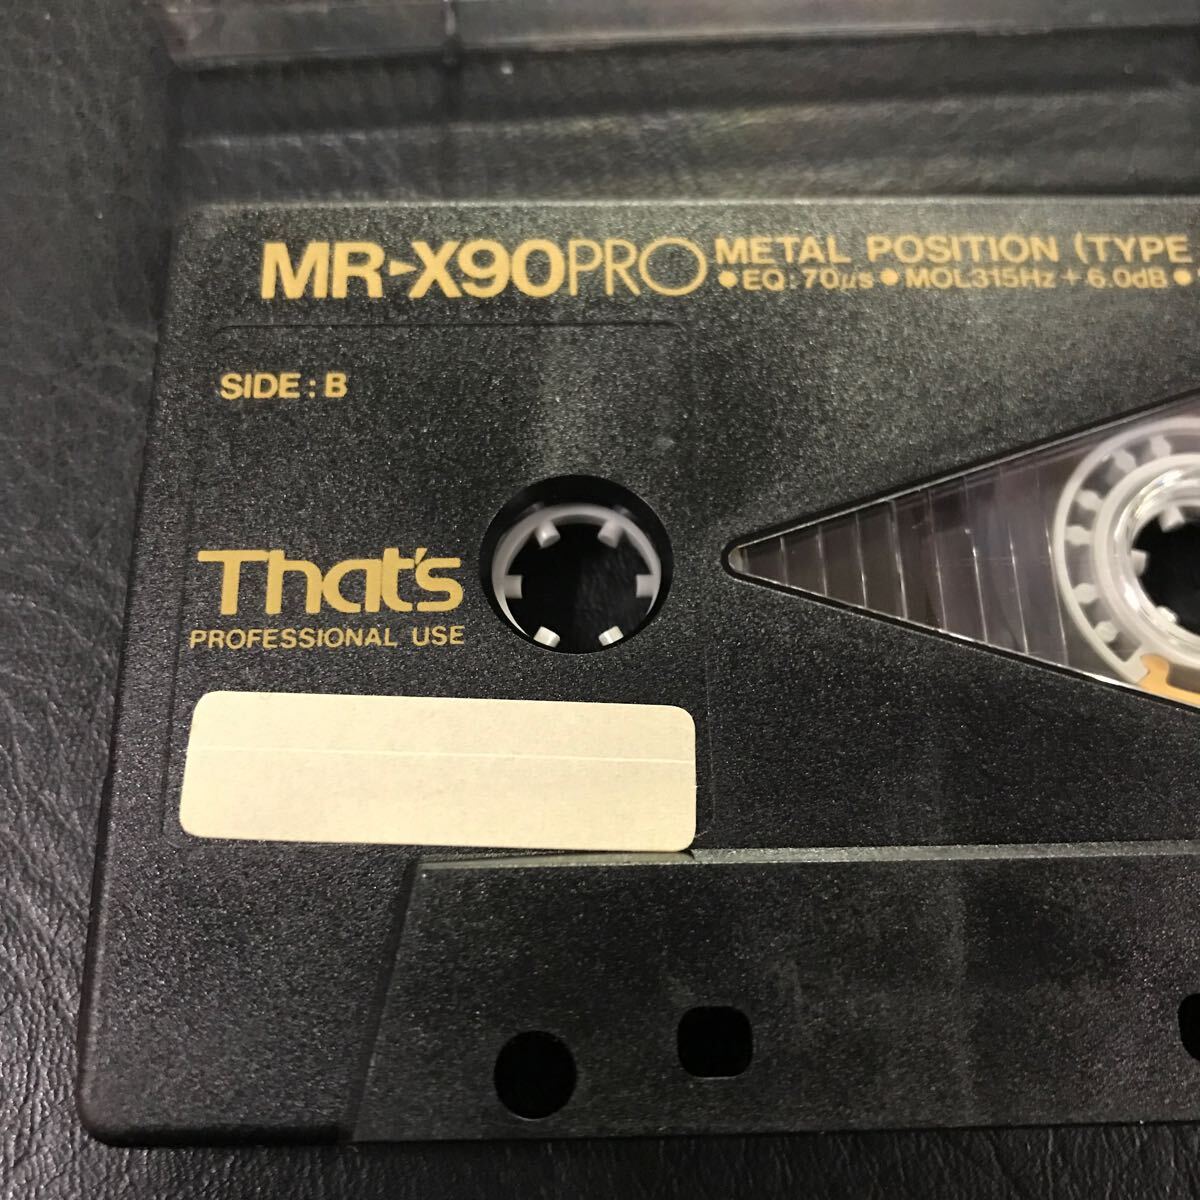 T3045 中古 That's メタル カセットテープ MR-X90 PRO METAL 録音済み ツメあり 音鳴り確認済 メタルポジション Ⅳ 爪あり 90分テープ_画像2